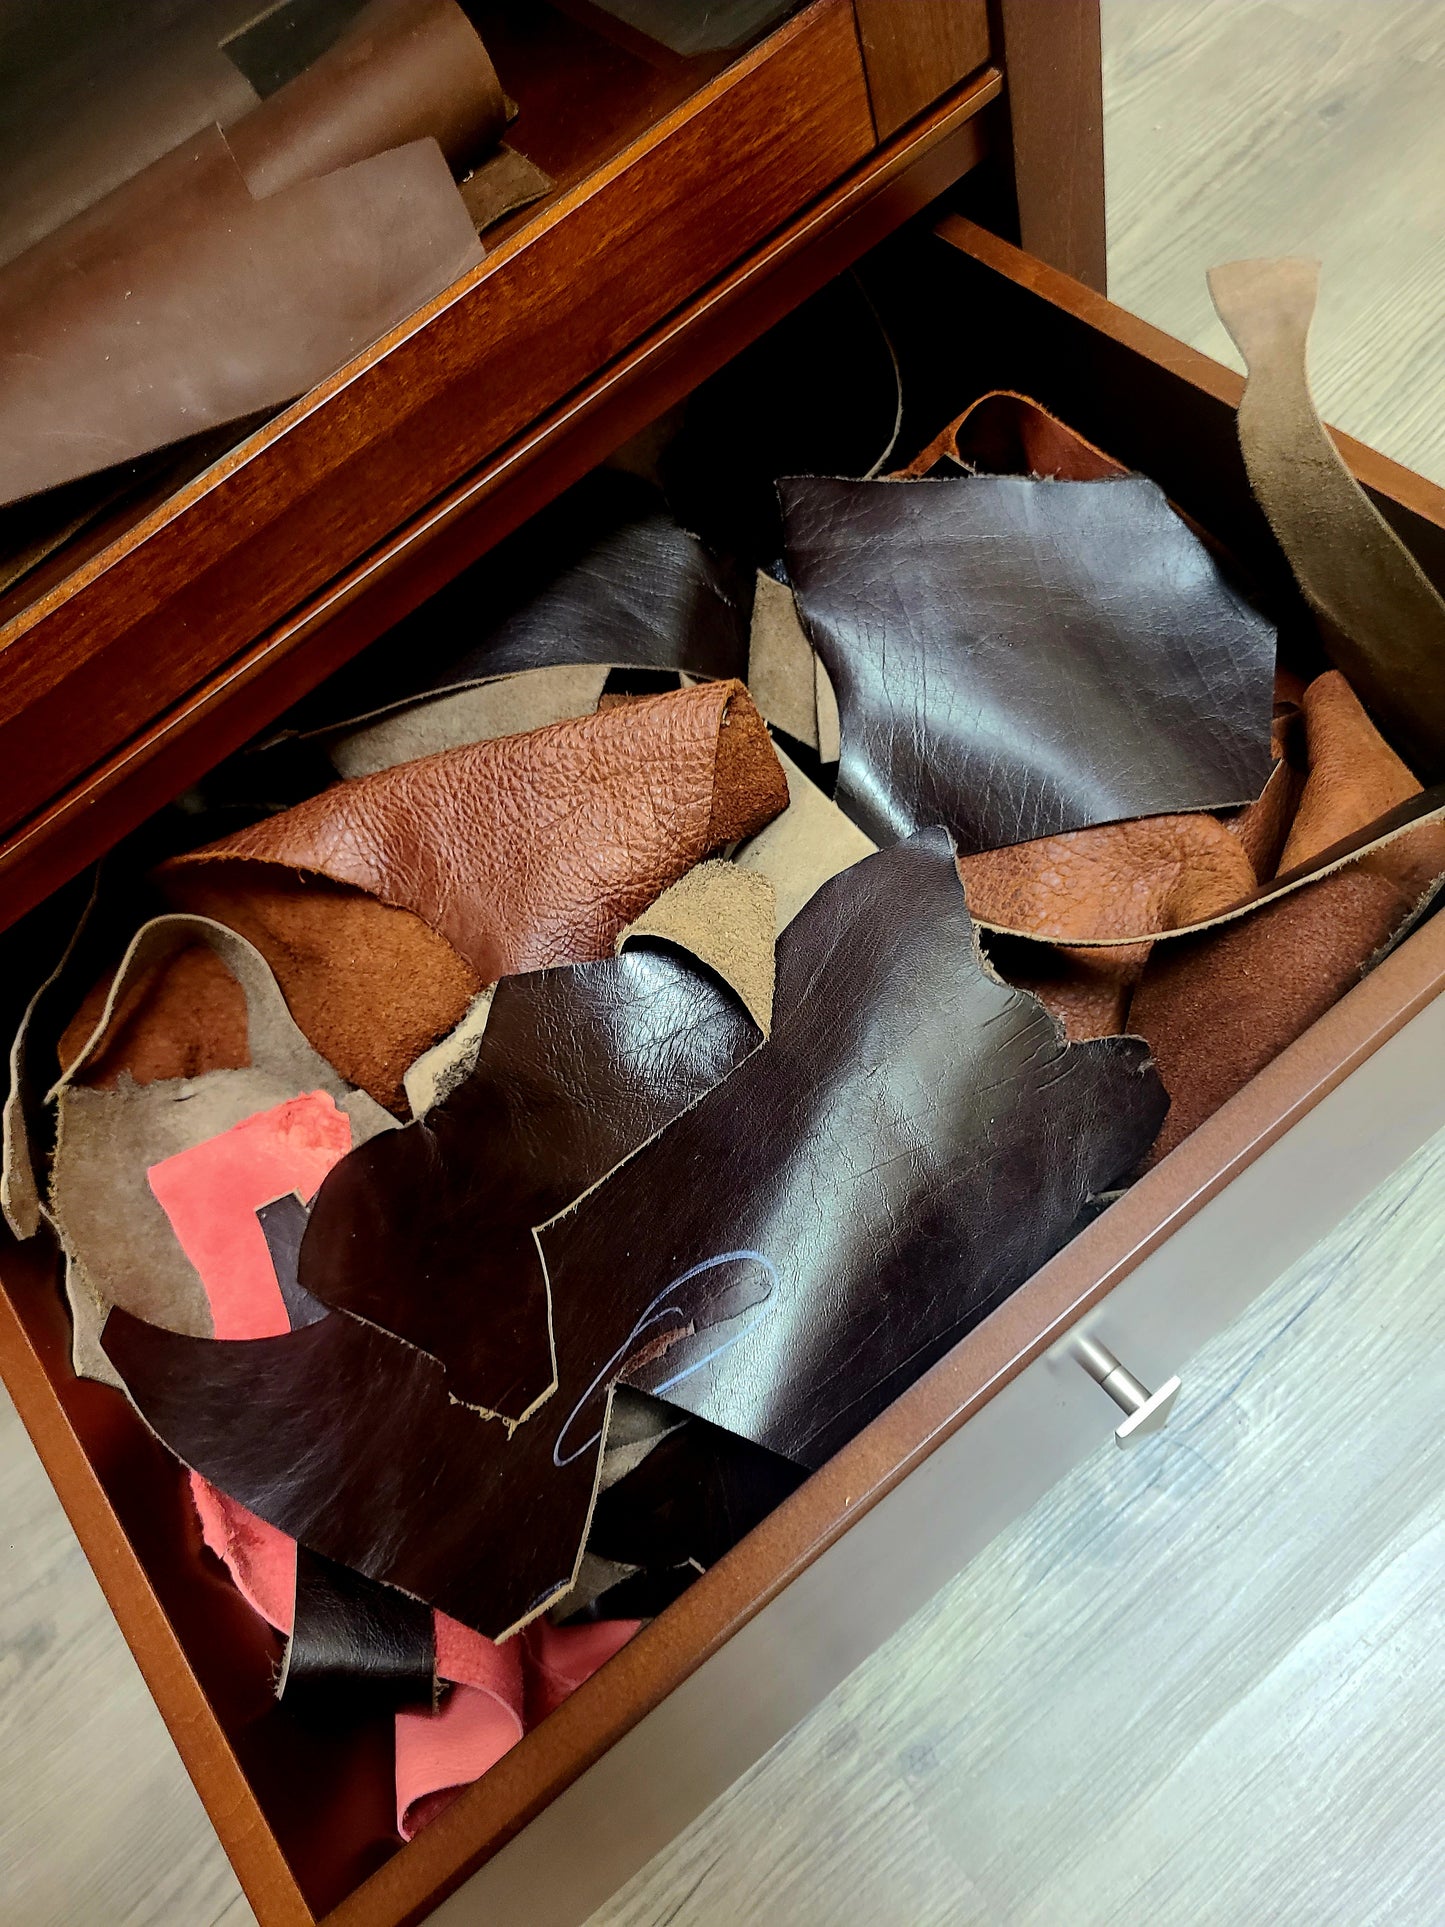 Leather Remnants - 1Lb in Linen Bag